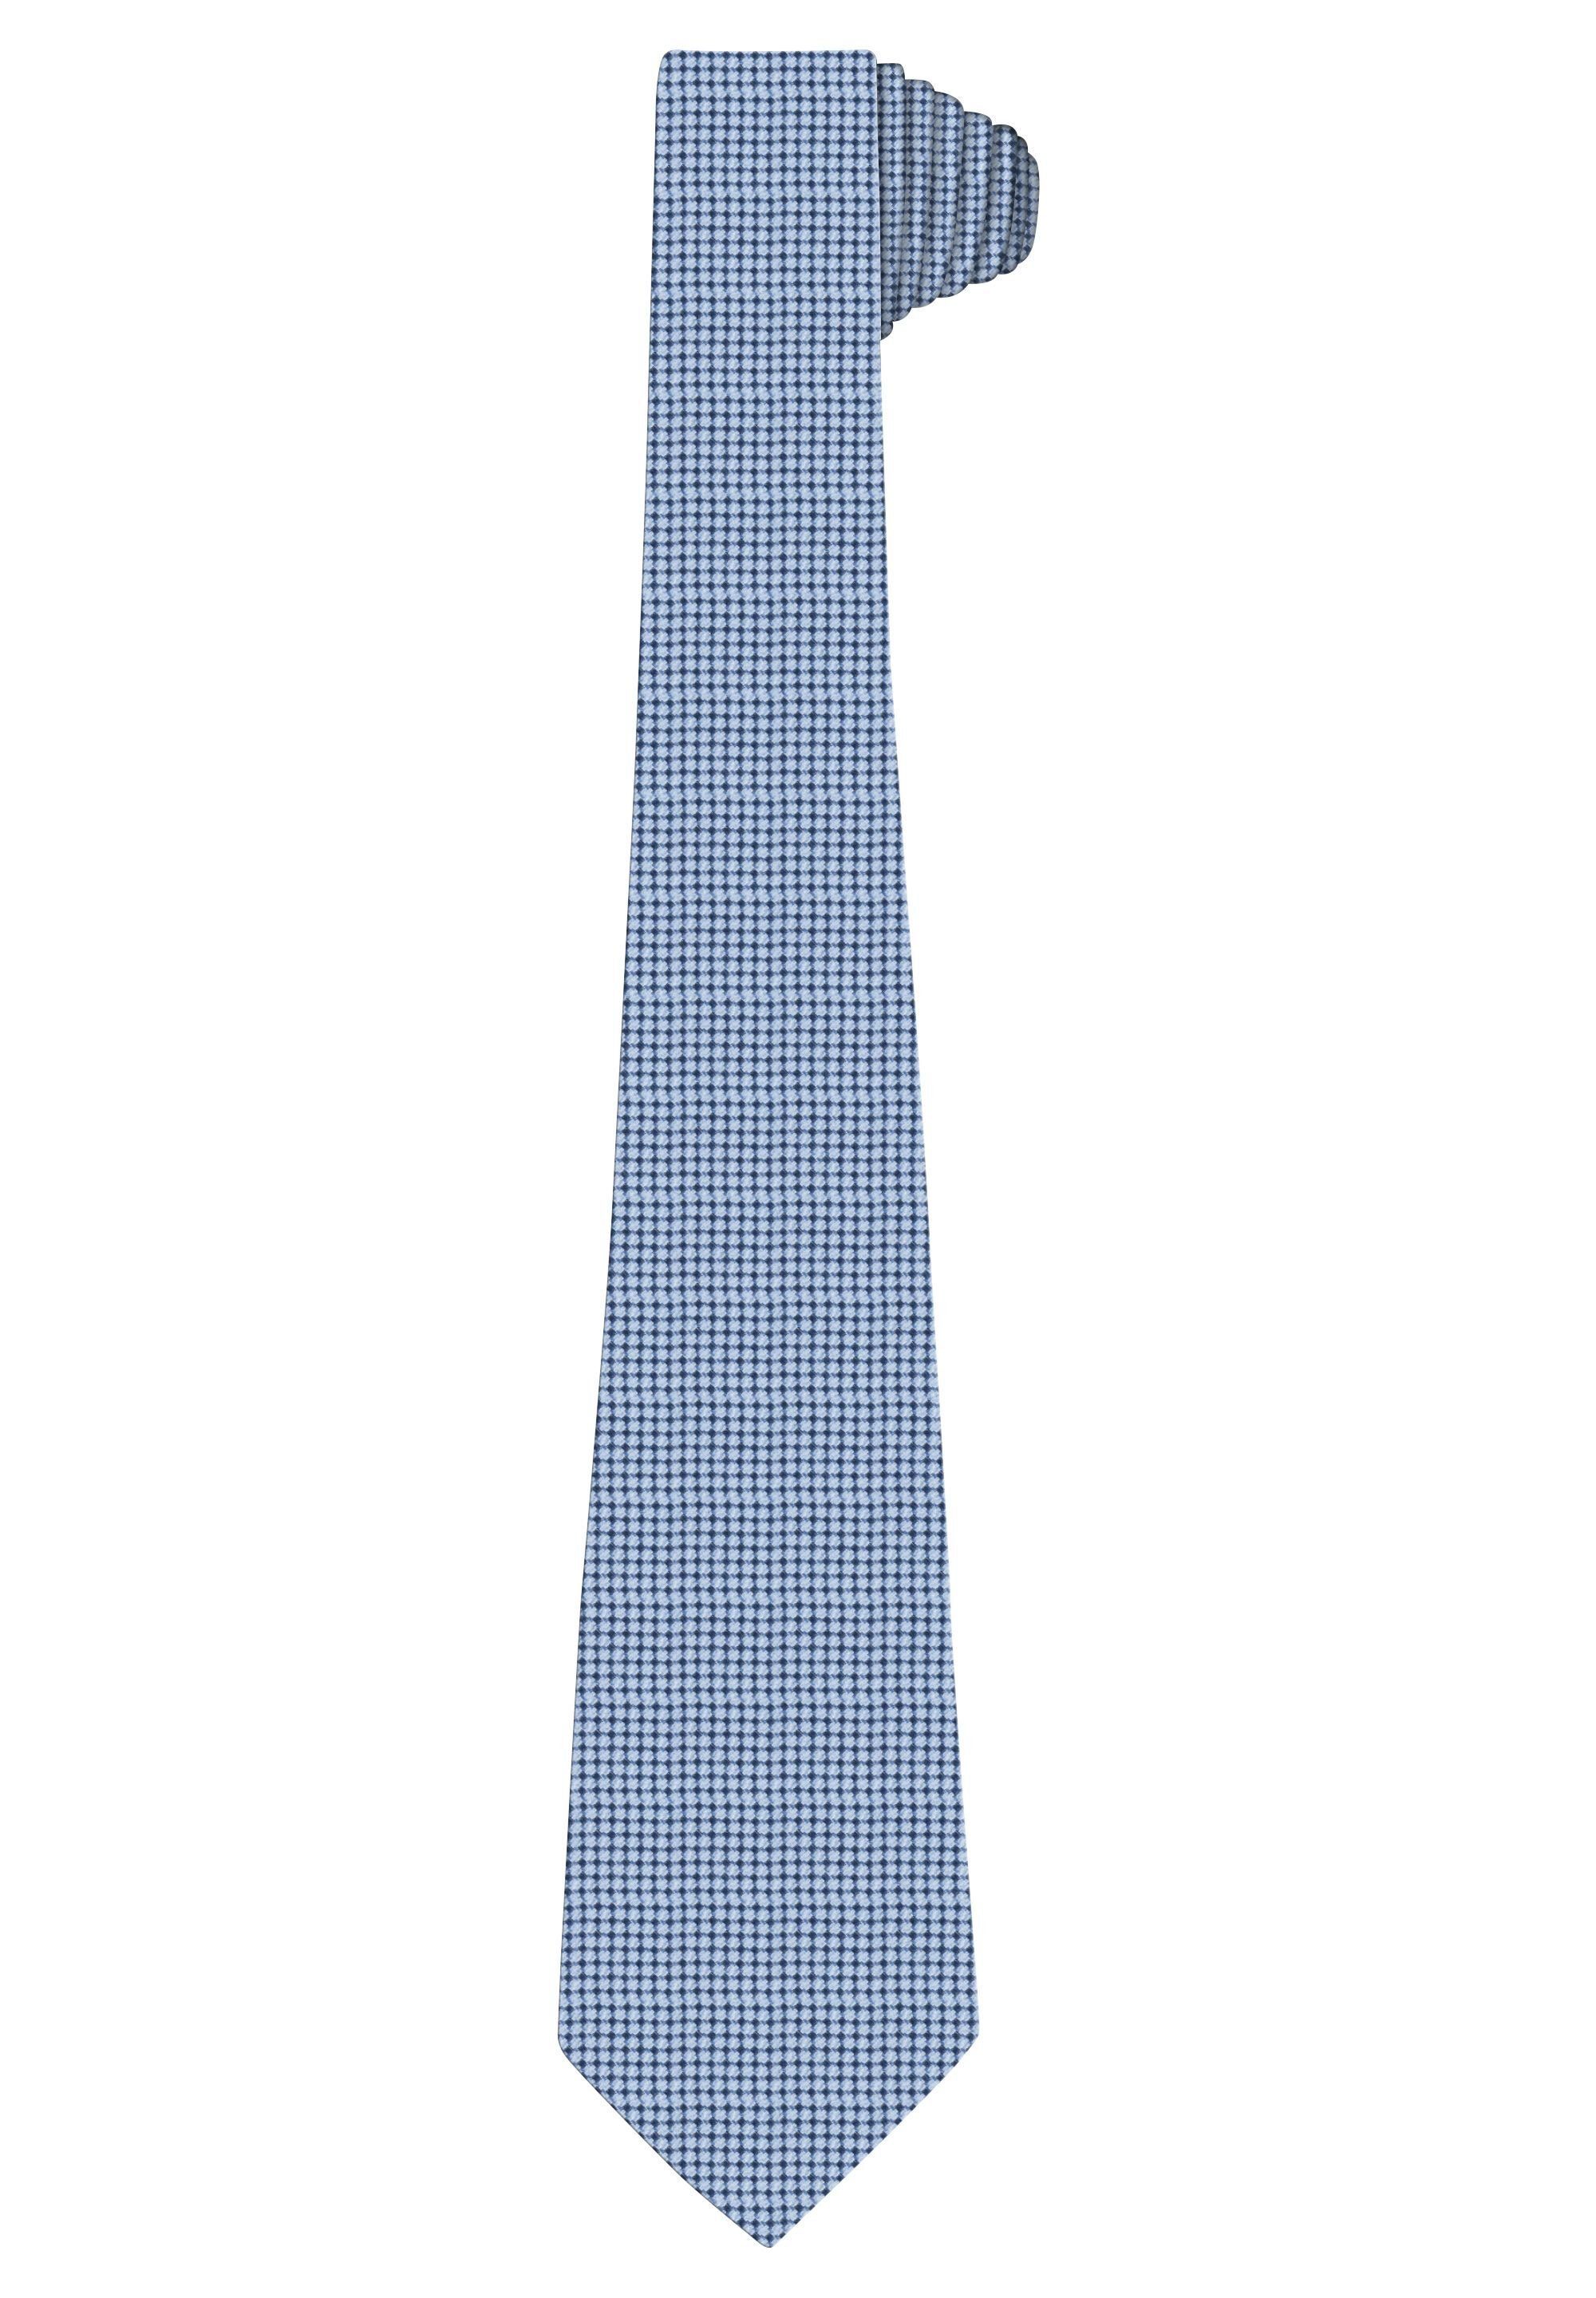 HECHTER PARIS Krawatte mit Modische Musterung sky blue | Breite Krawatten